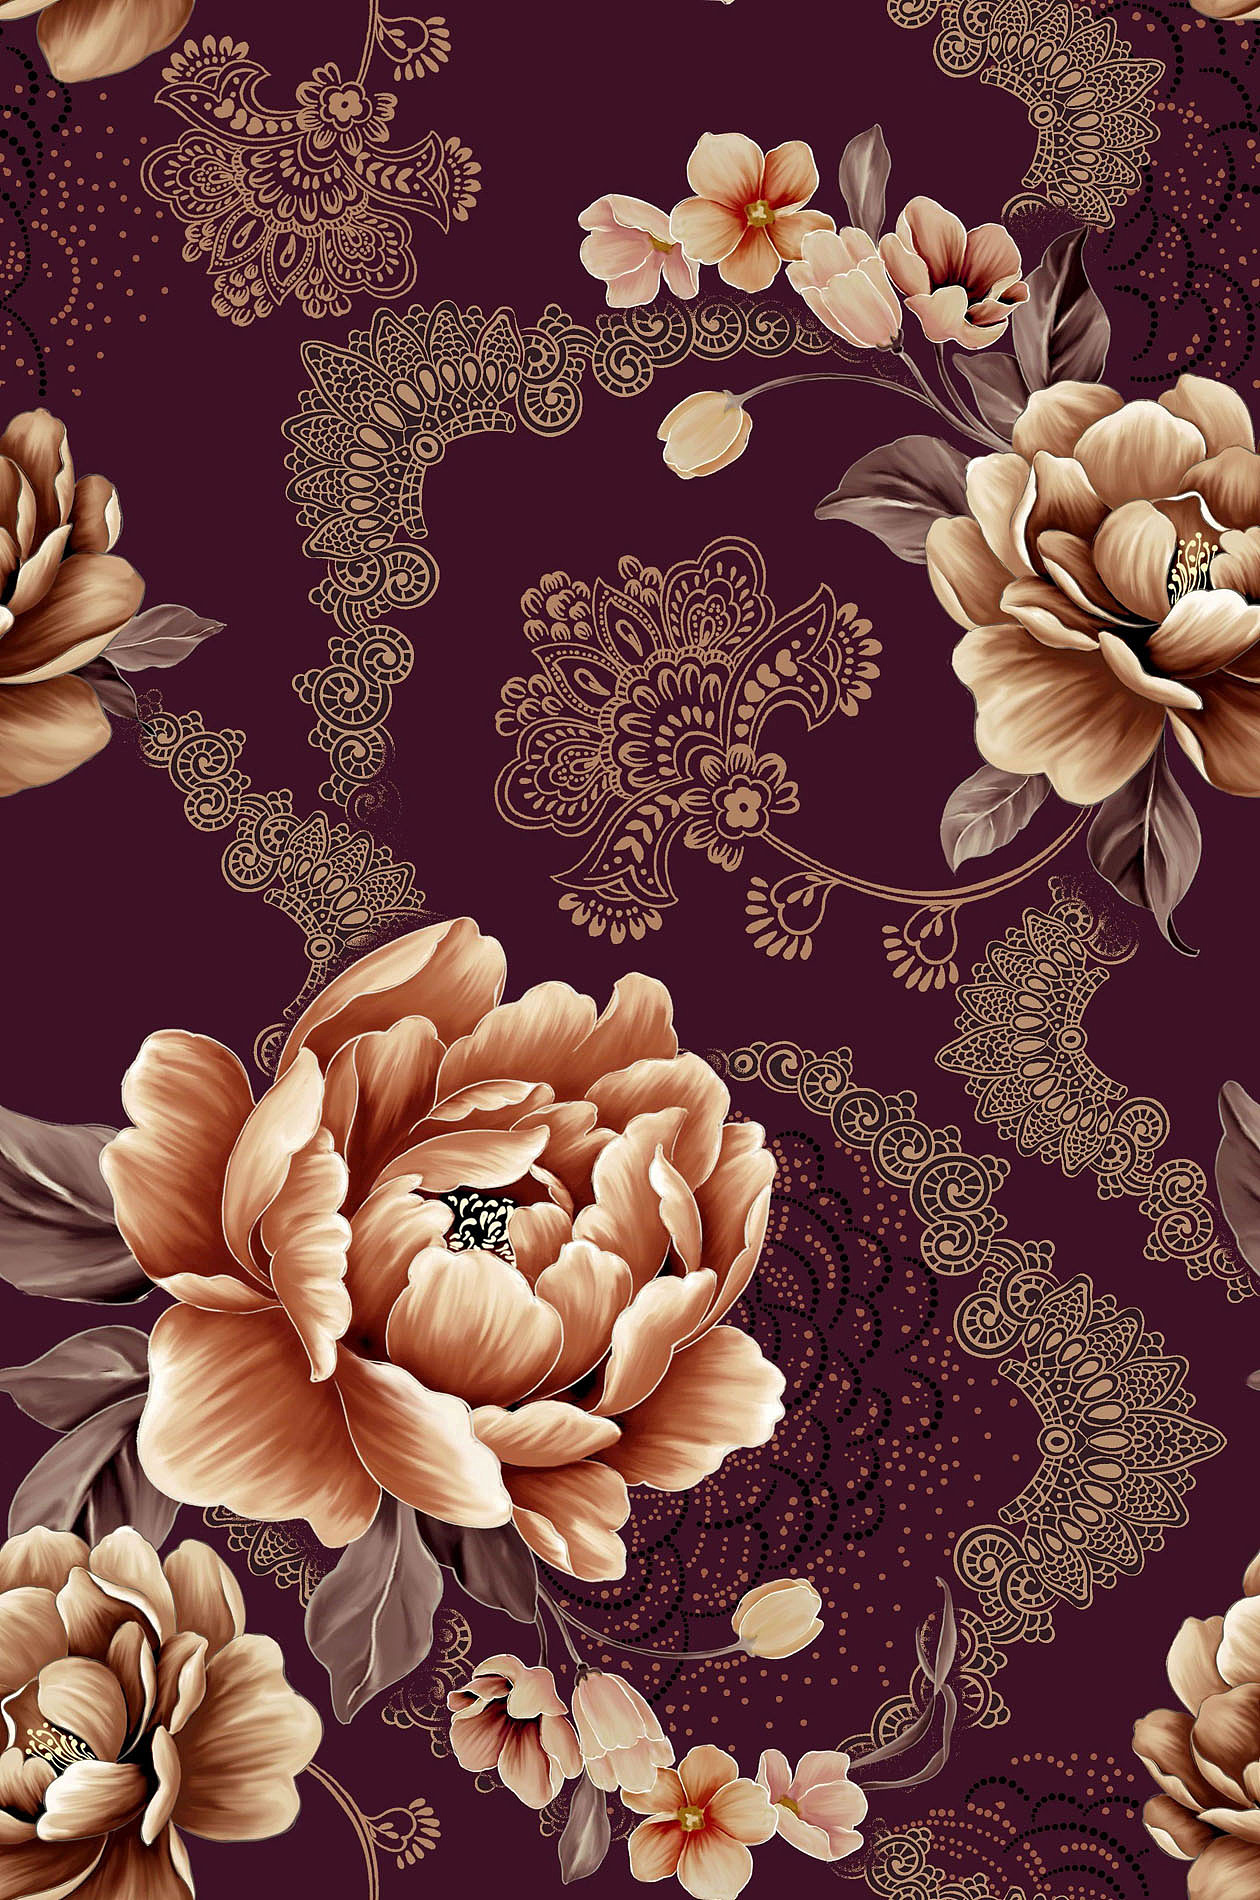 色织大提花装饰布 雪尼尔沙发布靠垫布料 欧式大花家纺面料-阿里巴巴